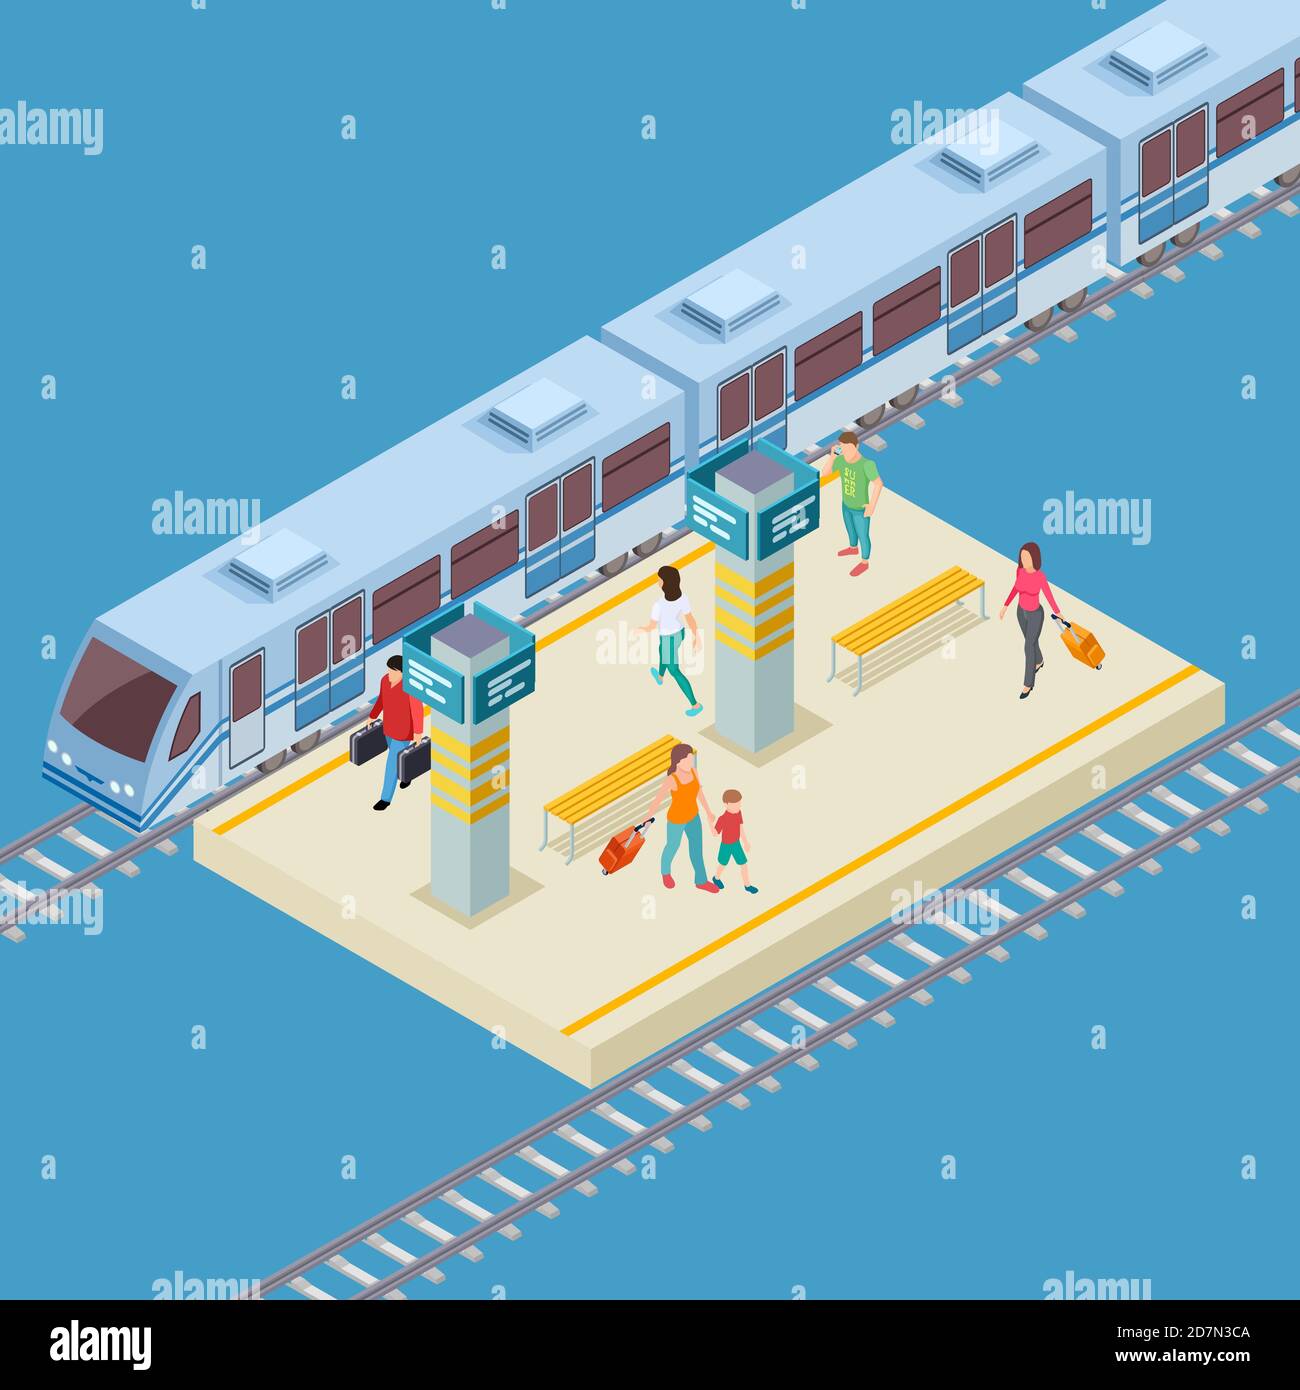 Isometrische 3d Stadt Bahnhof Vektor Lage. Darstellung der Bahninfrastruktur, des öffentlichen Personenverkehrs Stock Vektor